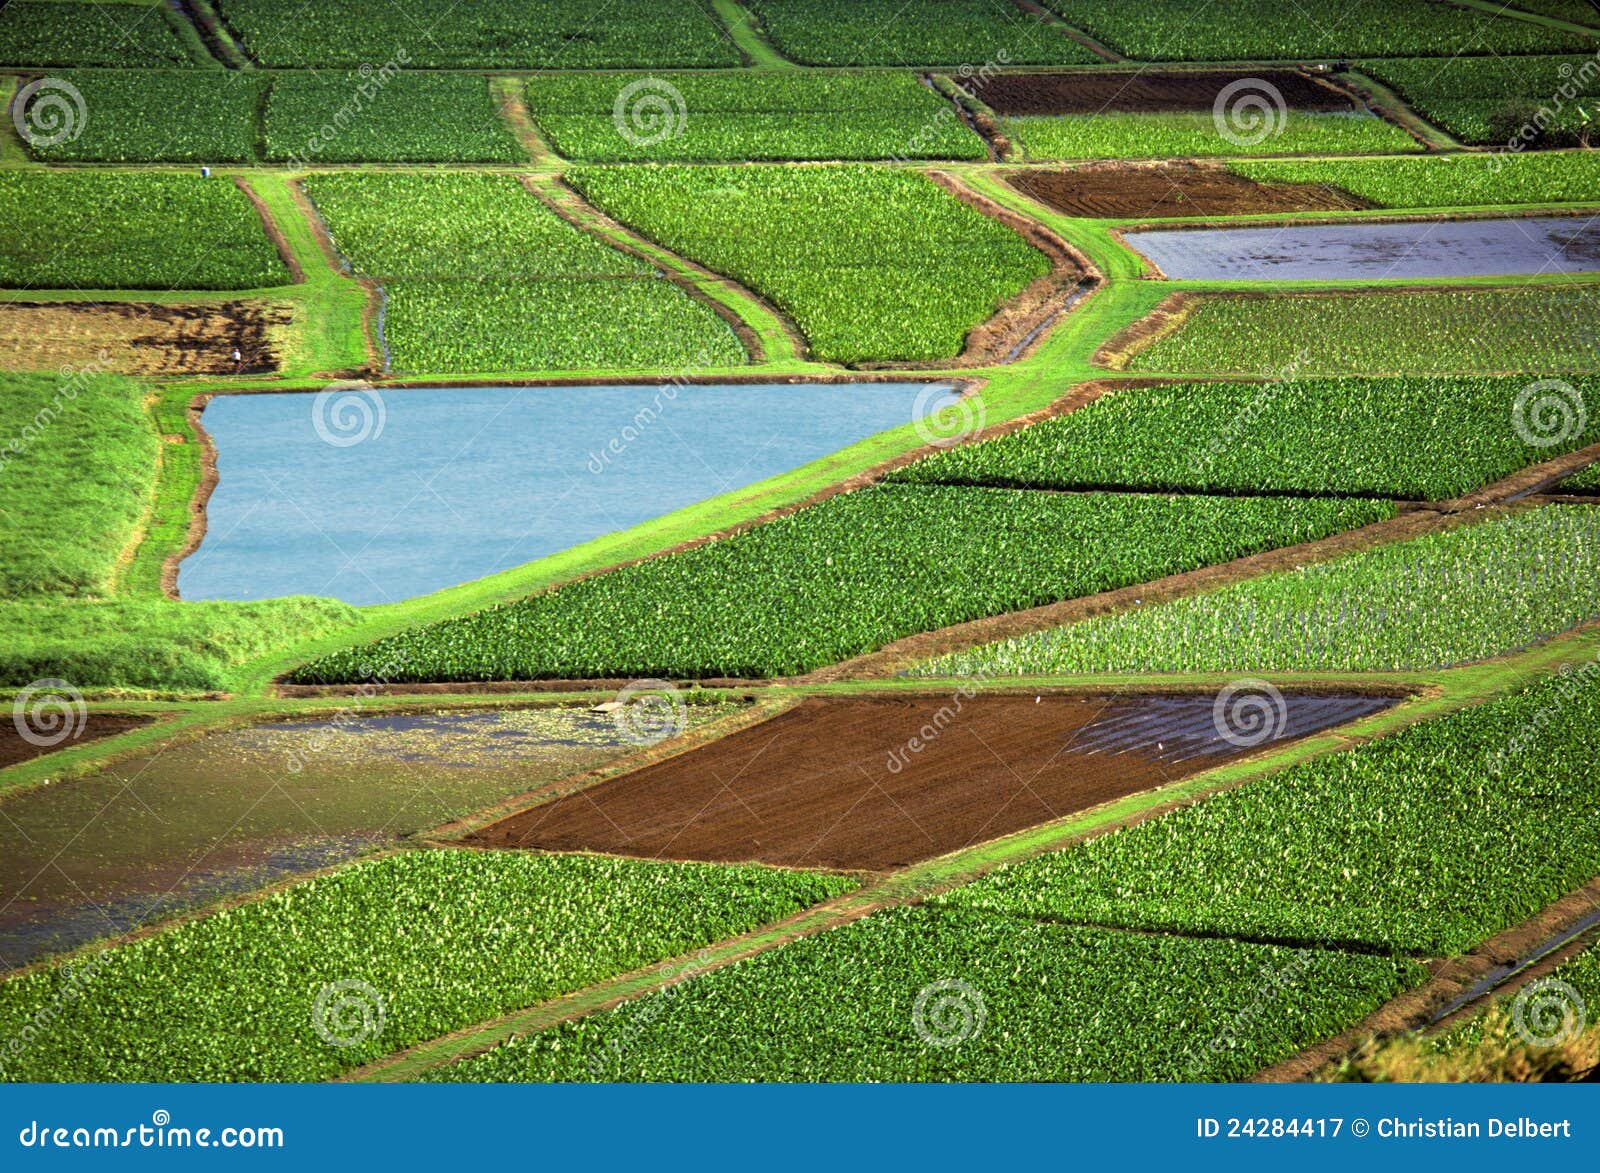 consumo Evaporar total Campos de la agricultura imagen de archivo. Imagen de prado - 24284417